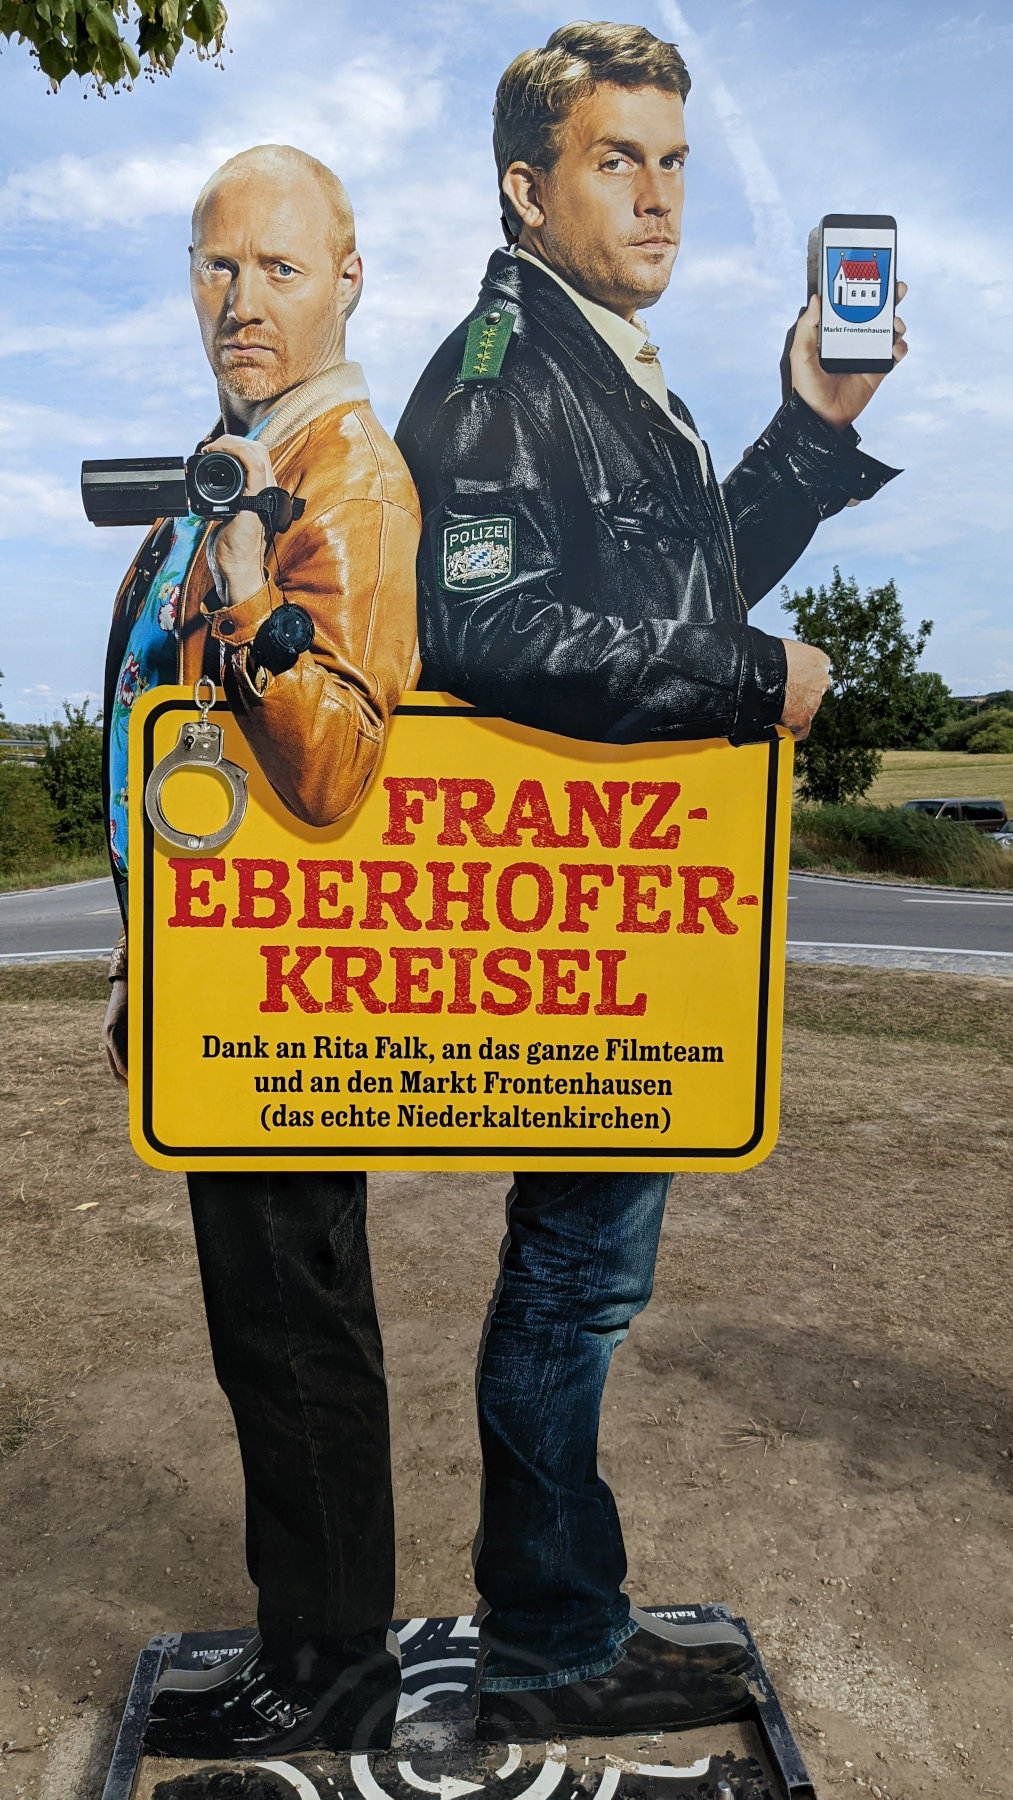 Eberhofer-Kreisel